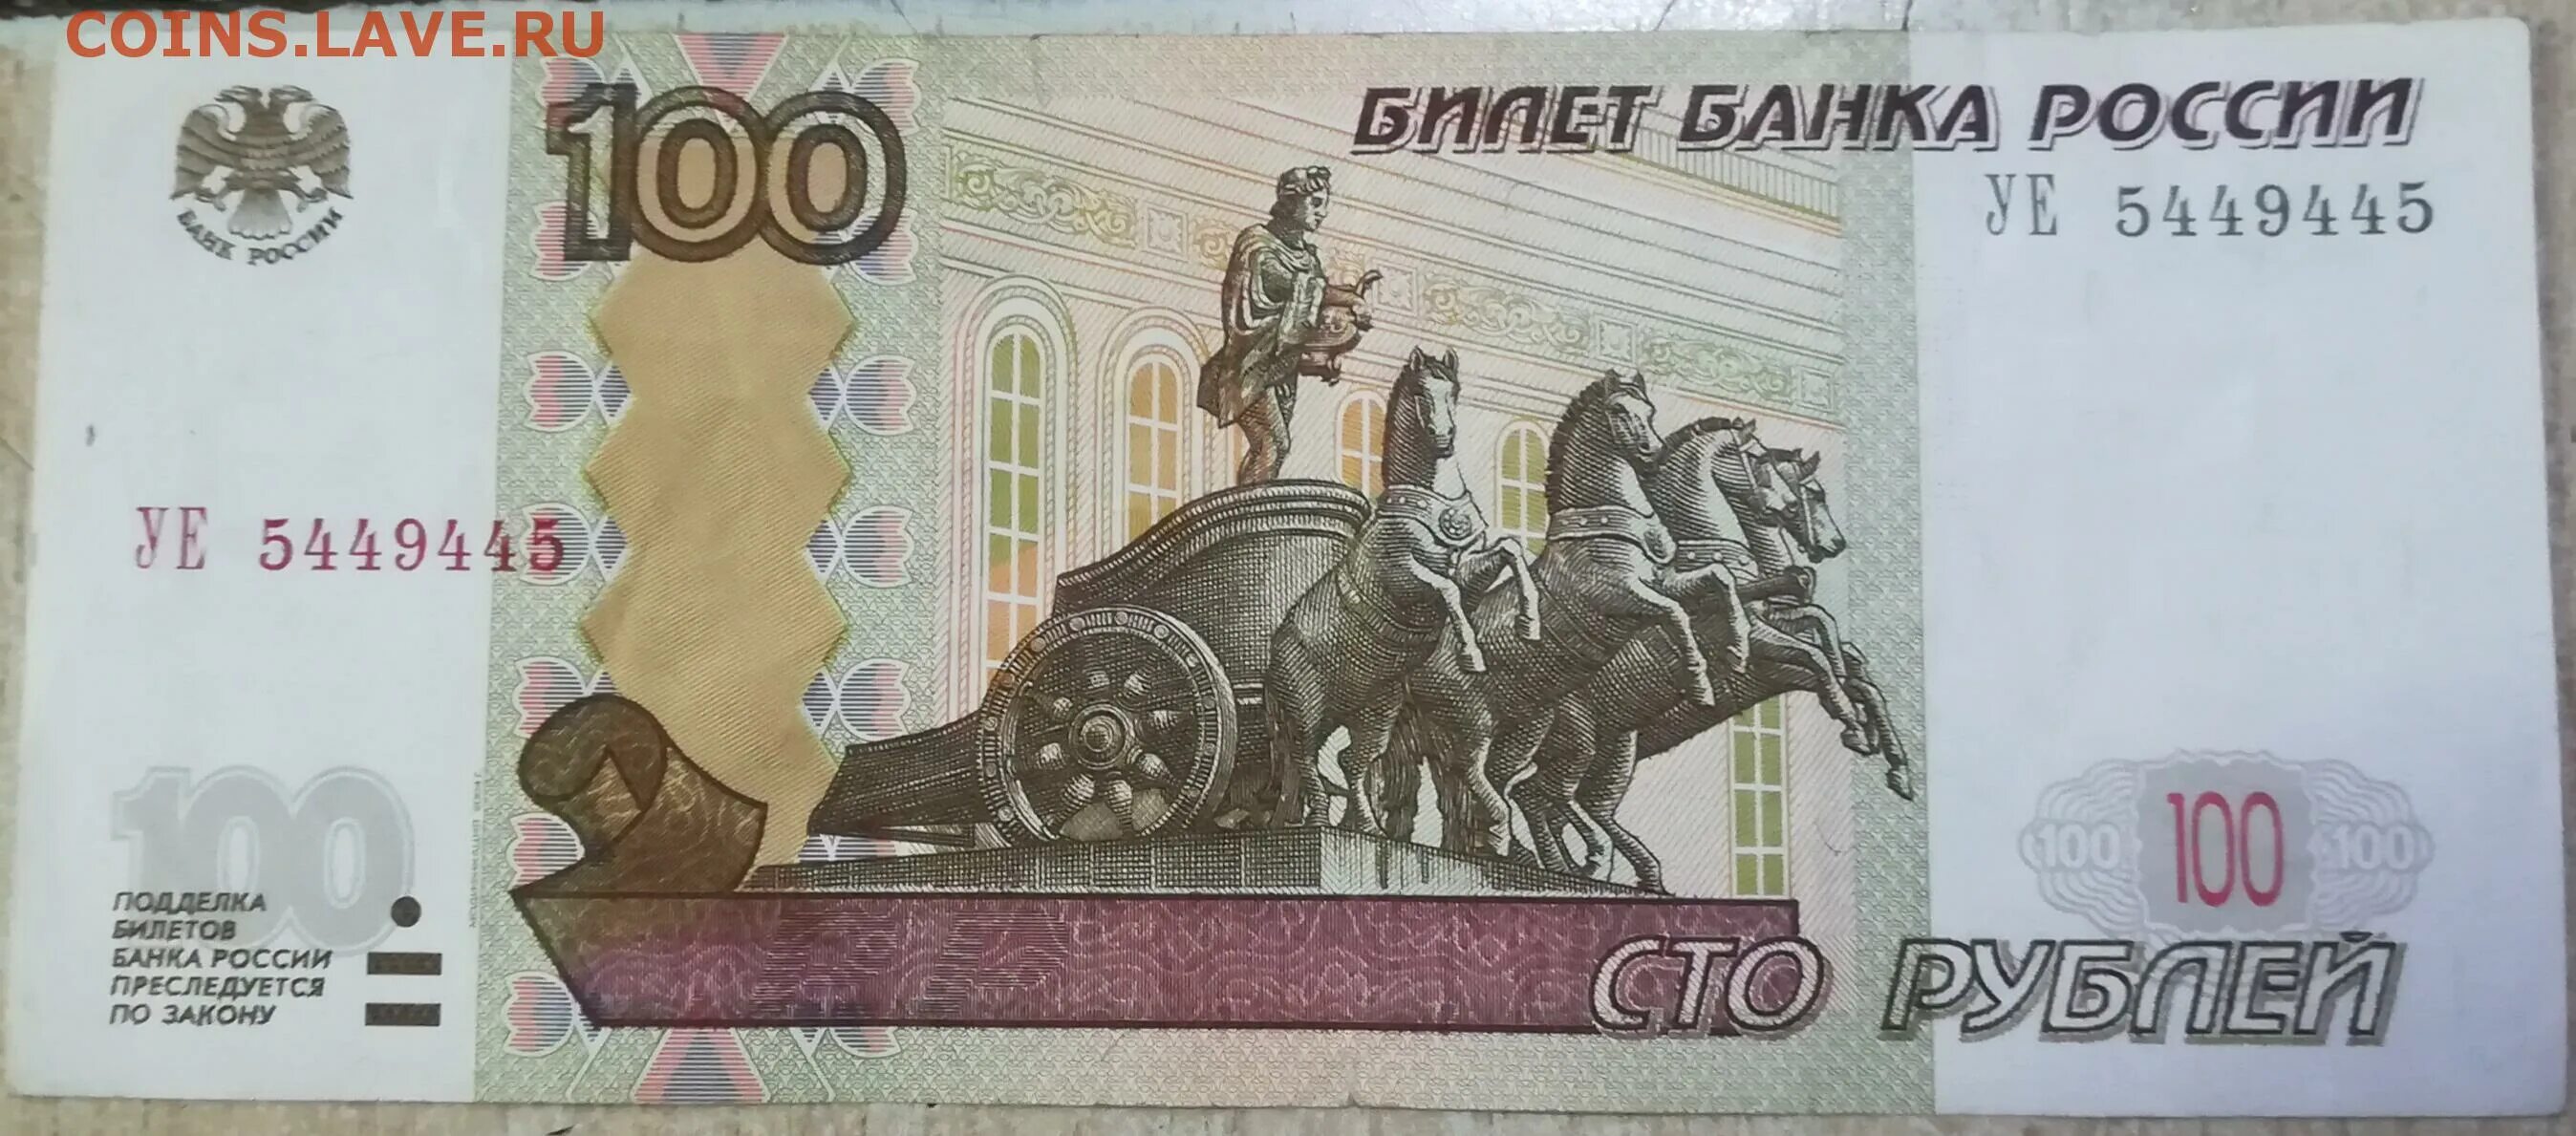 Несколько сотен рублей. 100 Рублей с красивым номером. 500 Рублей 1997 года редкие. Банкноты с красивыми номерами аукцион. 100 Рублей и 150.